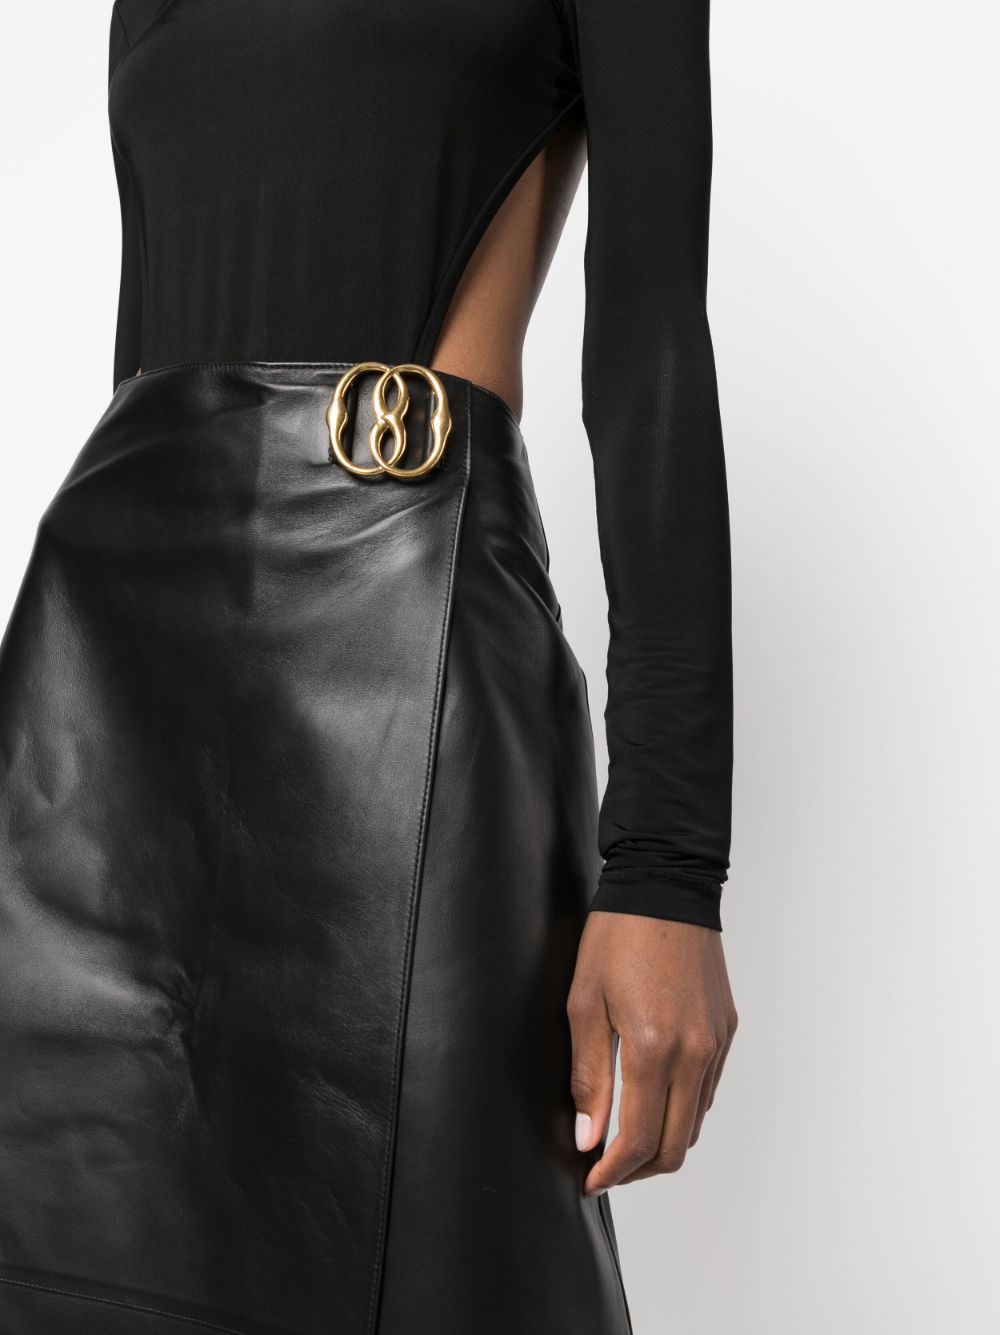 Shop Bally Black Leather Midi Skirt For Women